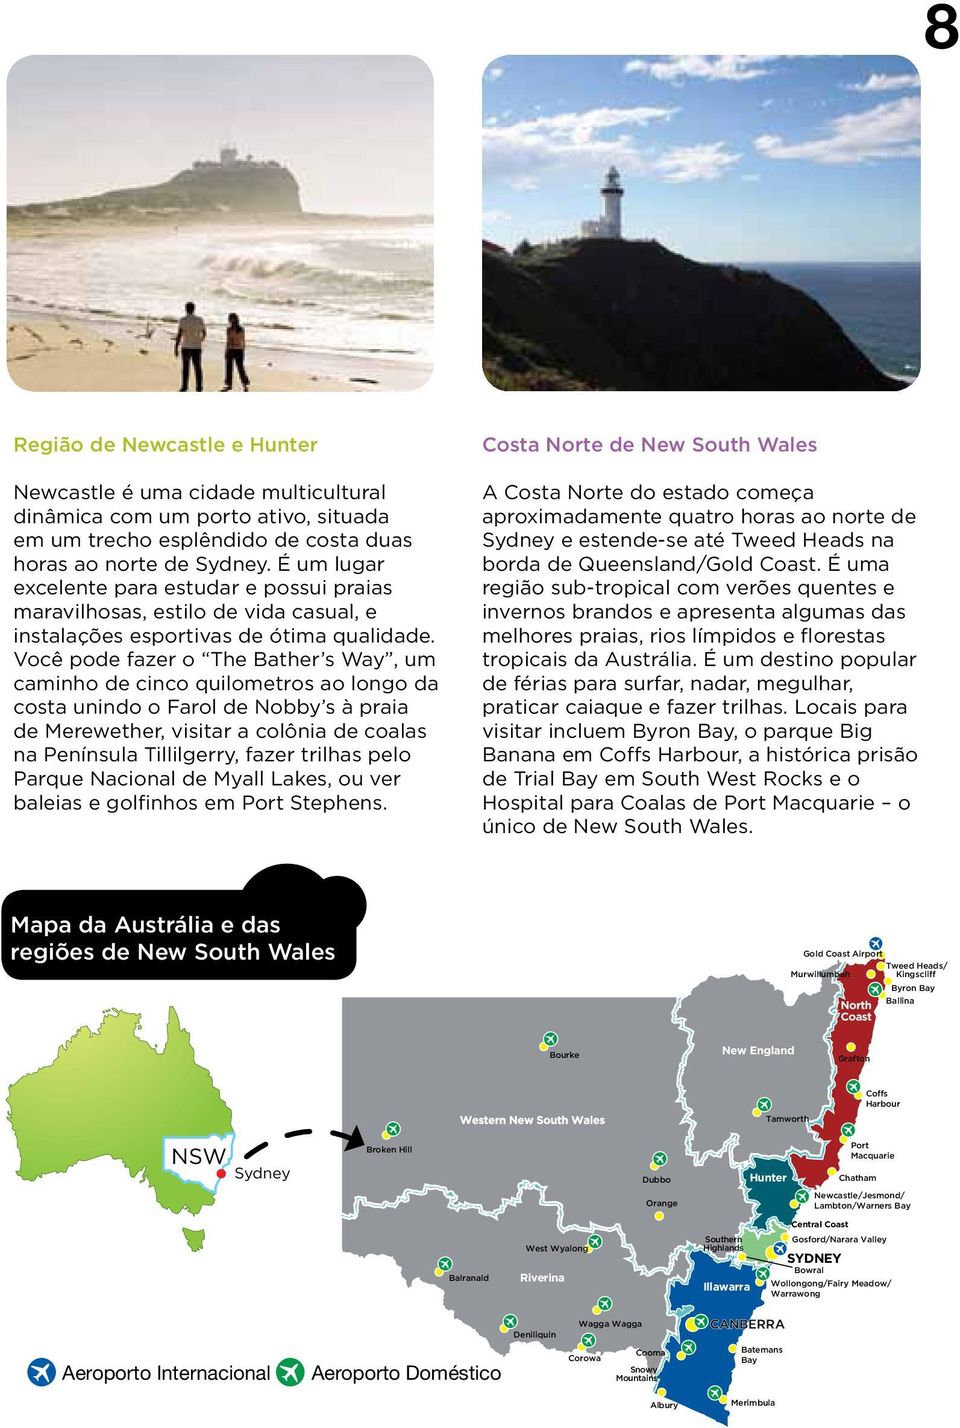 Você pode fazer o The Bather s Way, um caminho de cinco quilometros ao longo da costa unindo o Farol de Nobby s à praia de Merewether, visitar a colônia de coalas na Península Tillilgerry, fazer